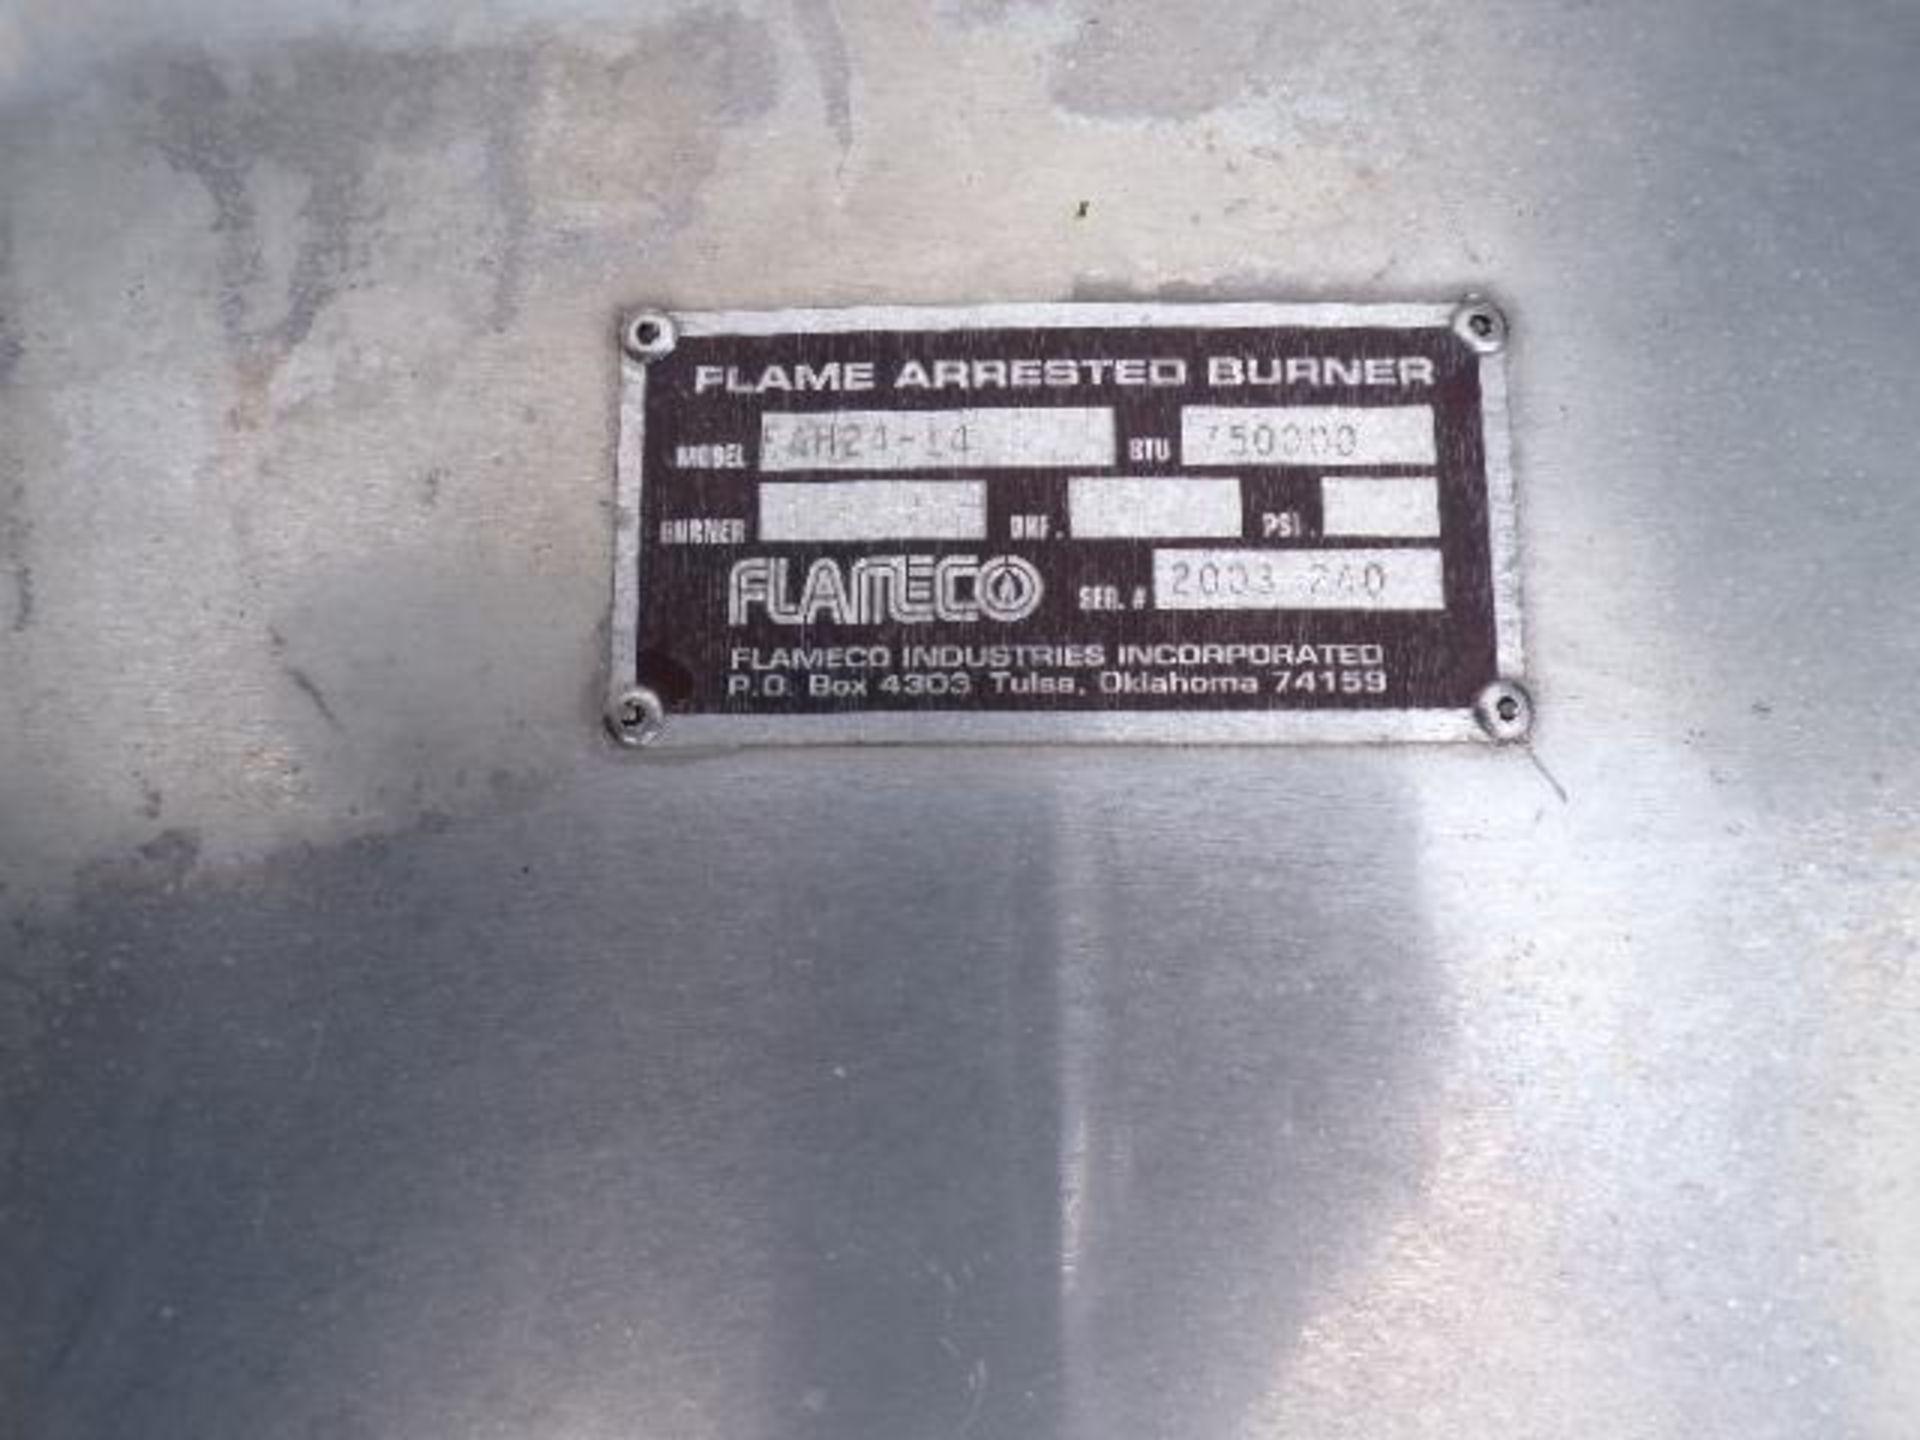 Flameco Flame Arrested Burner, Model FAH24-14, 750,000 BTU (Used) - Image 4 of 4